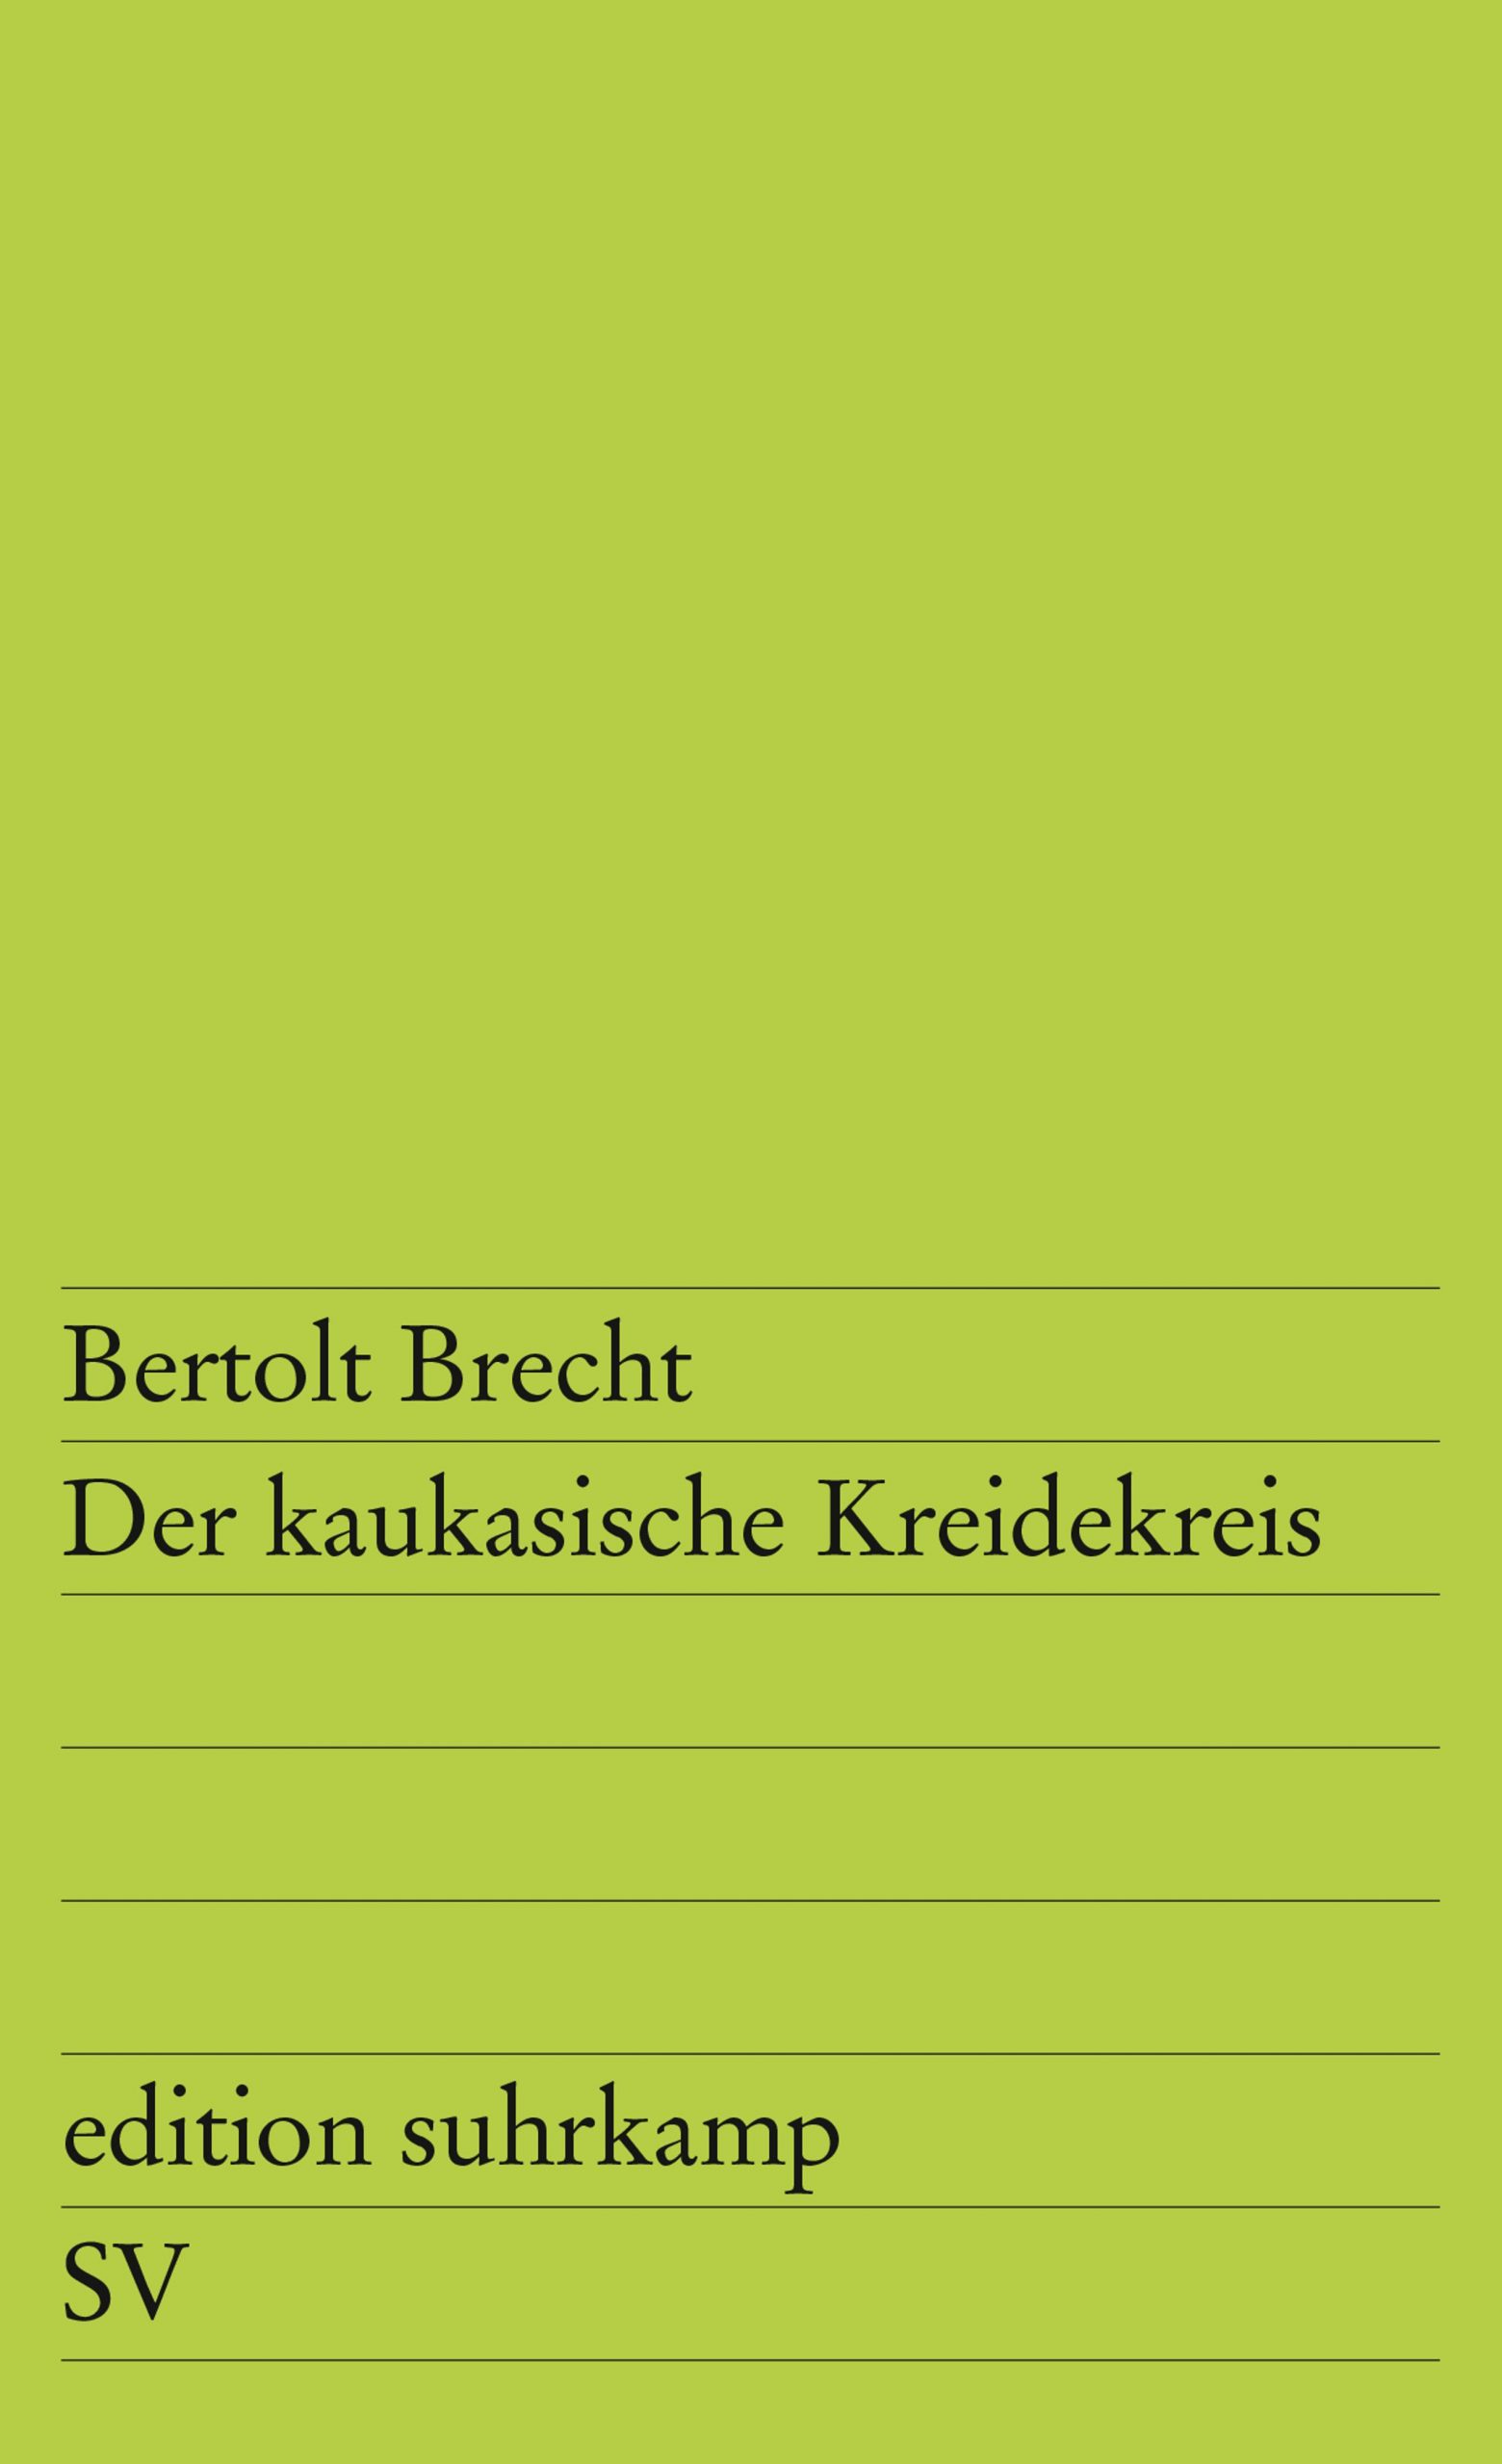 Bertolt Brecht und sein kommunistischer... kaukasischer Kreidekreis